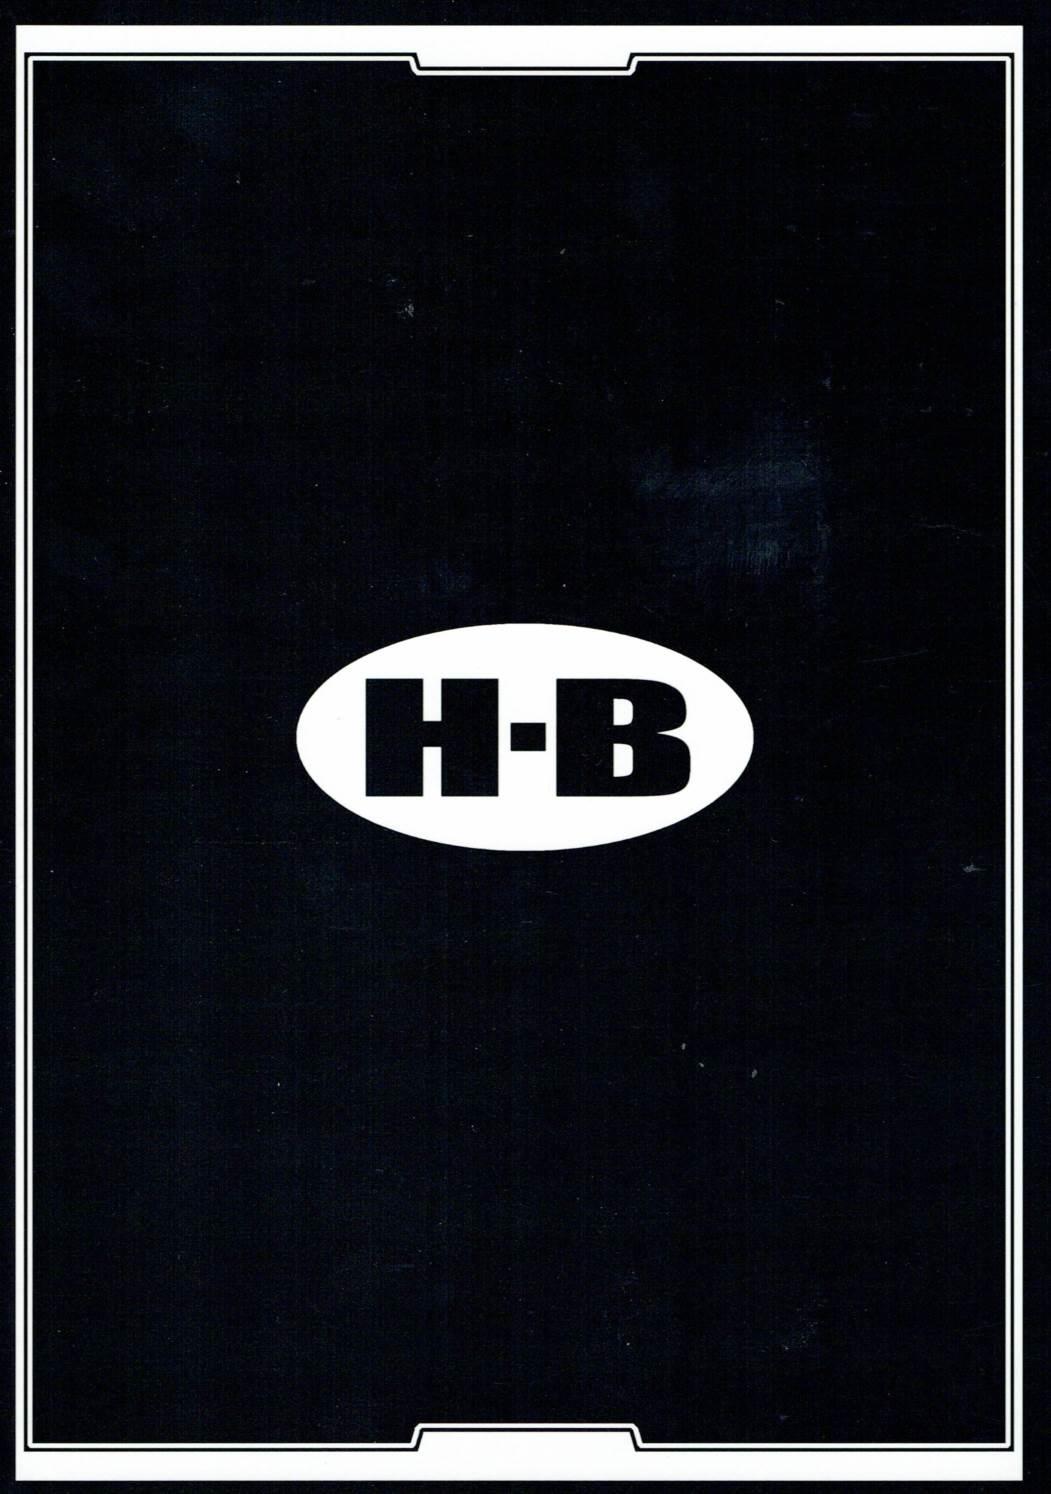 H.B e.t.c vol.5 25